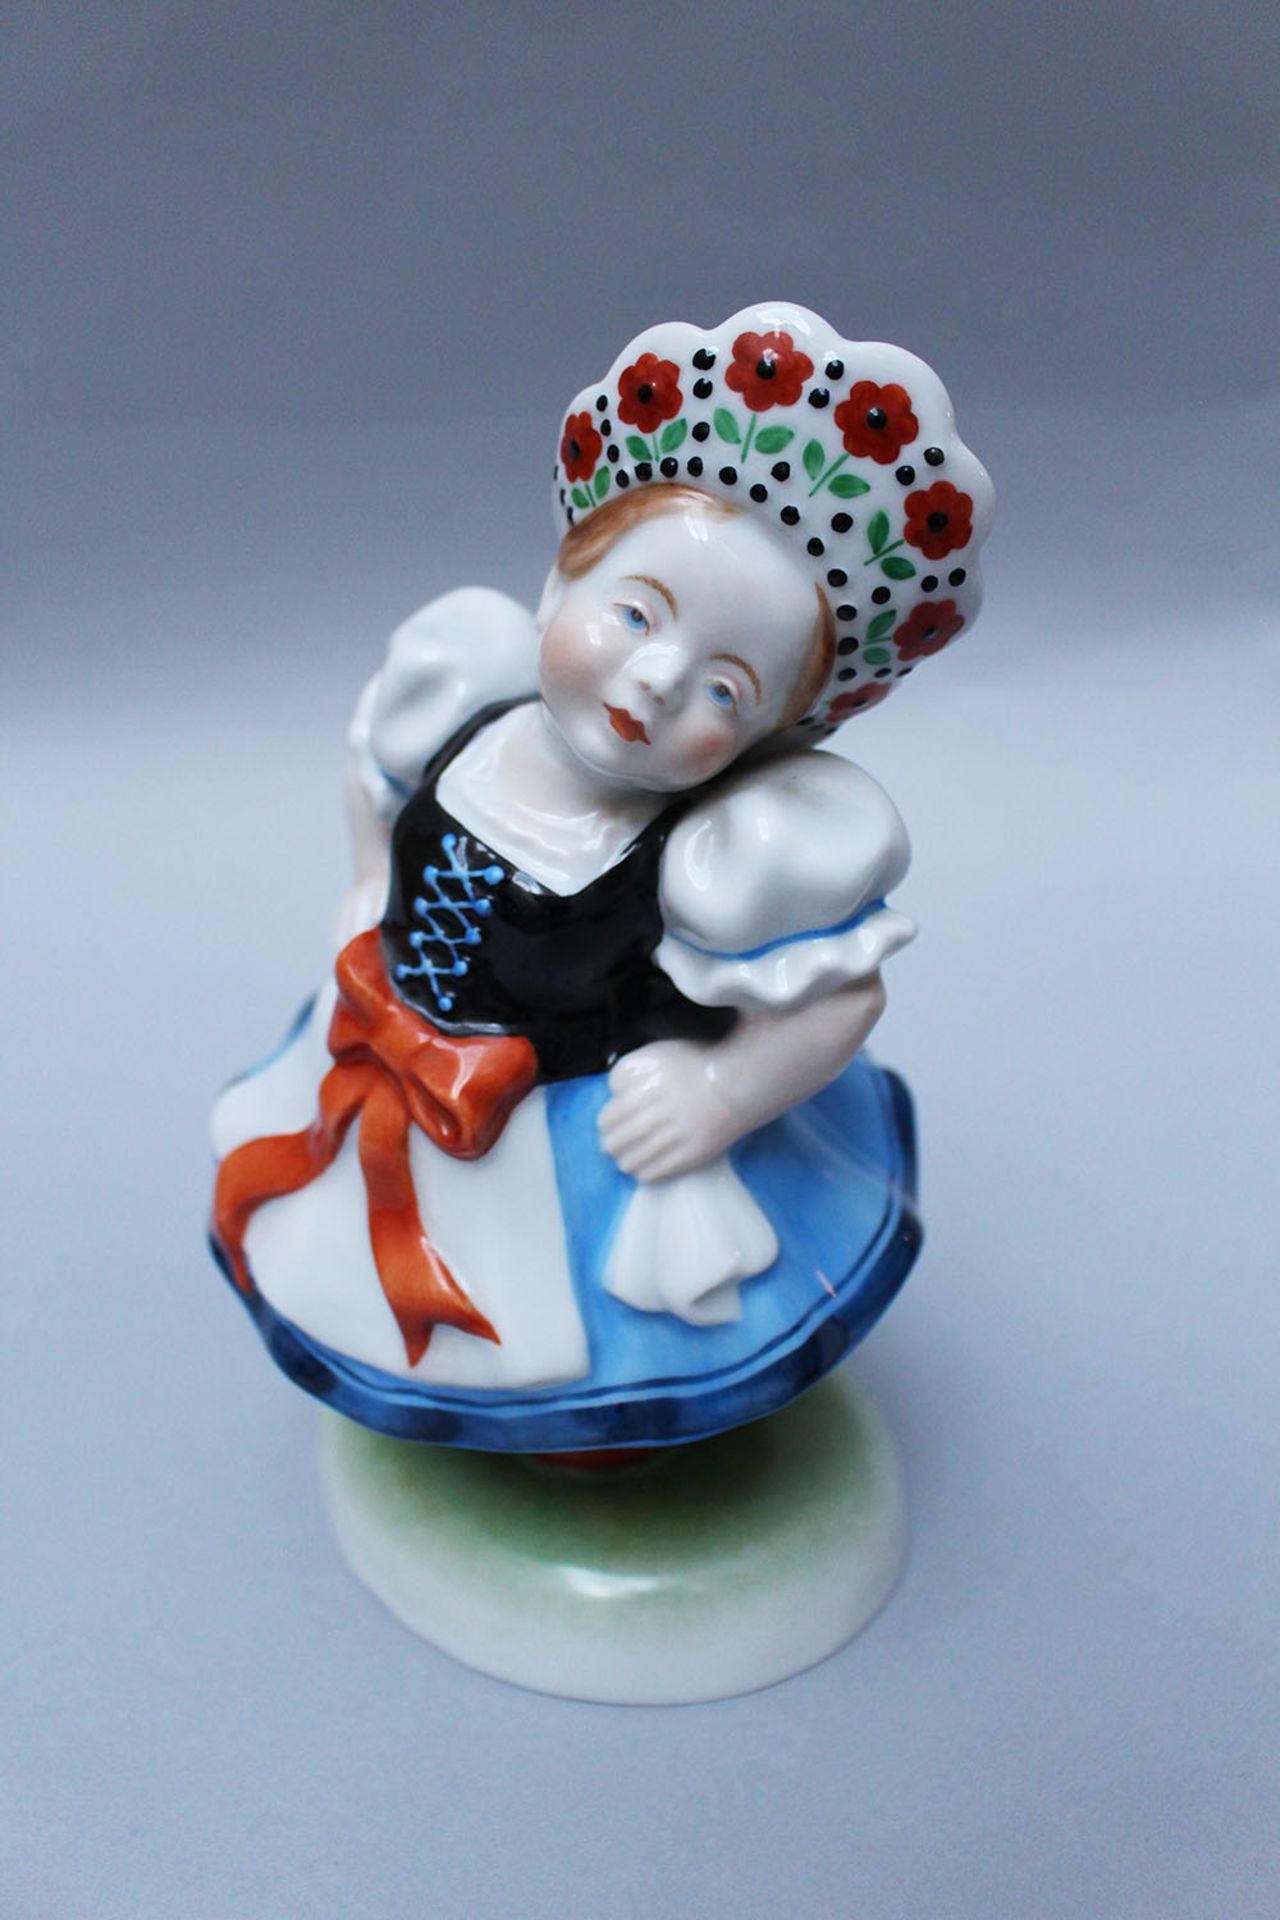 Hungarian porcelain